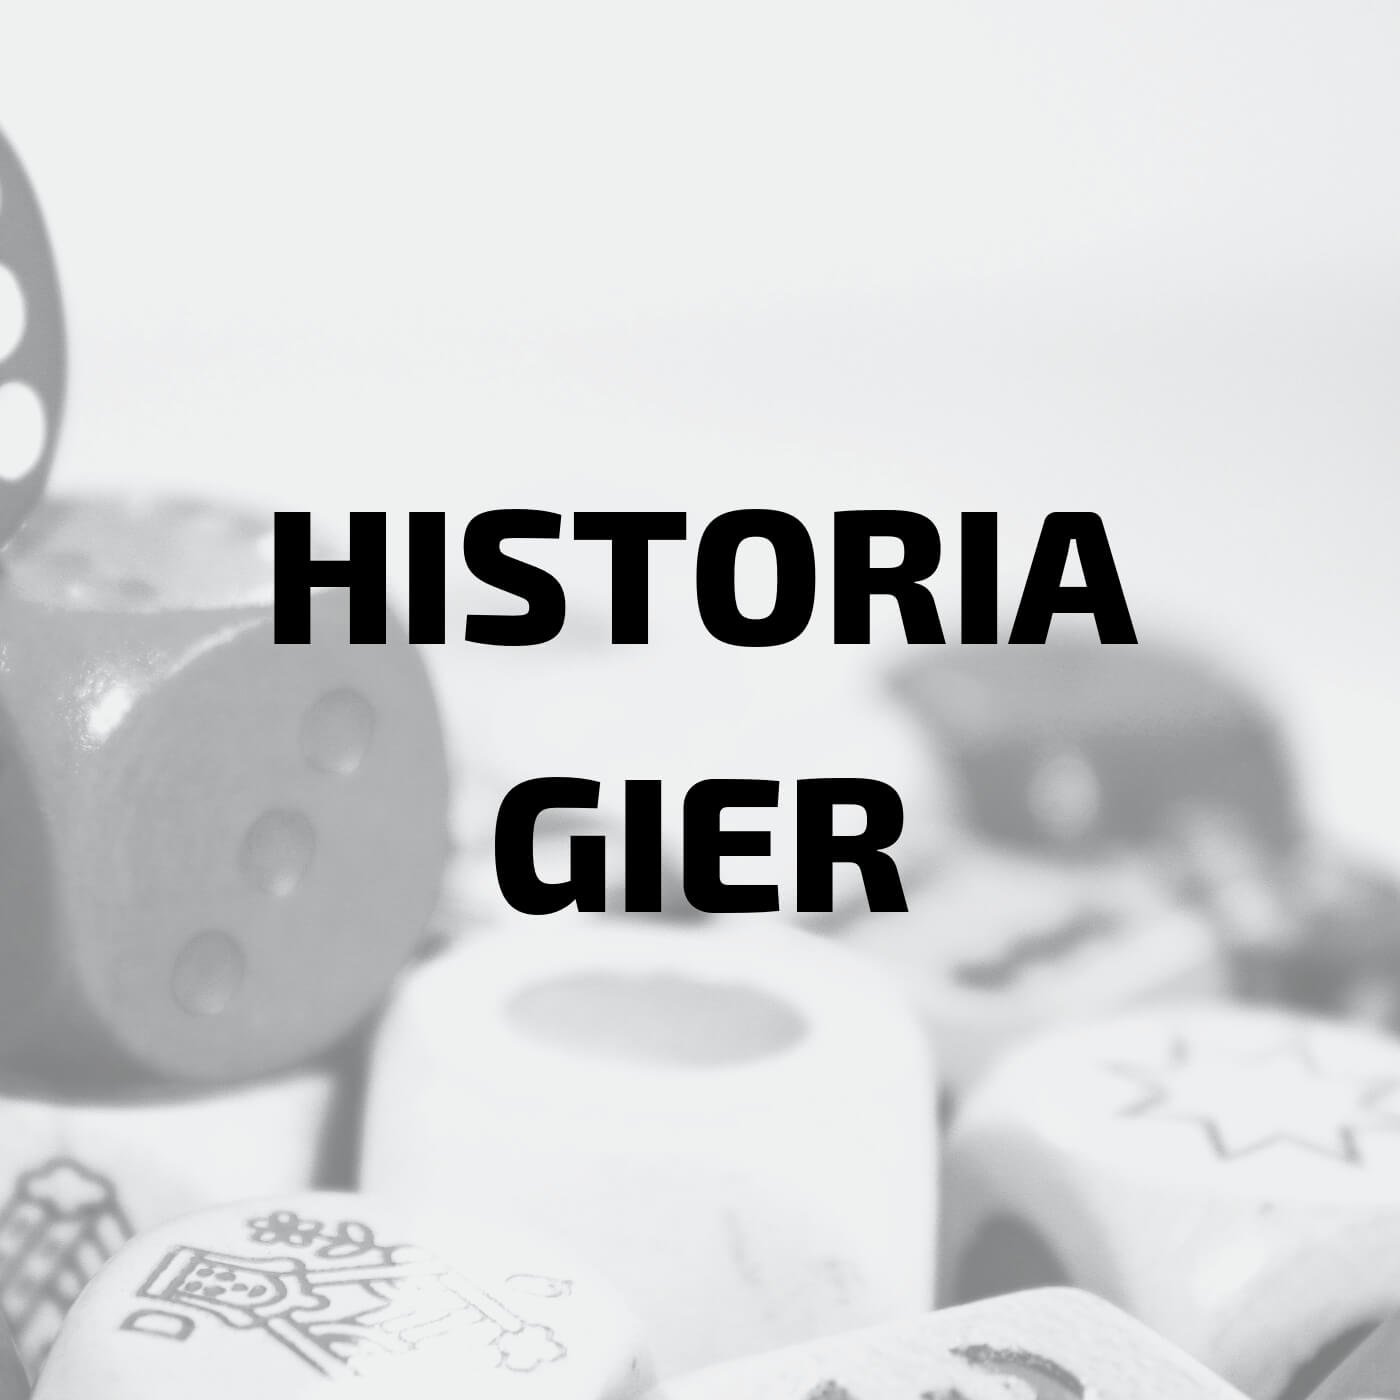 Historia Gier